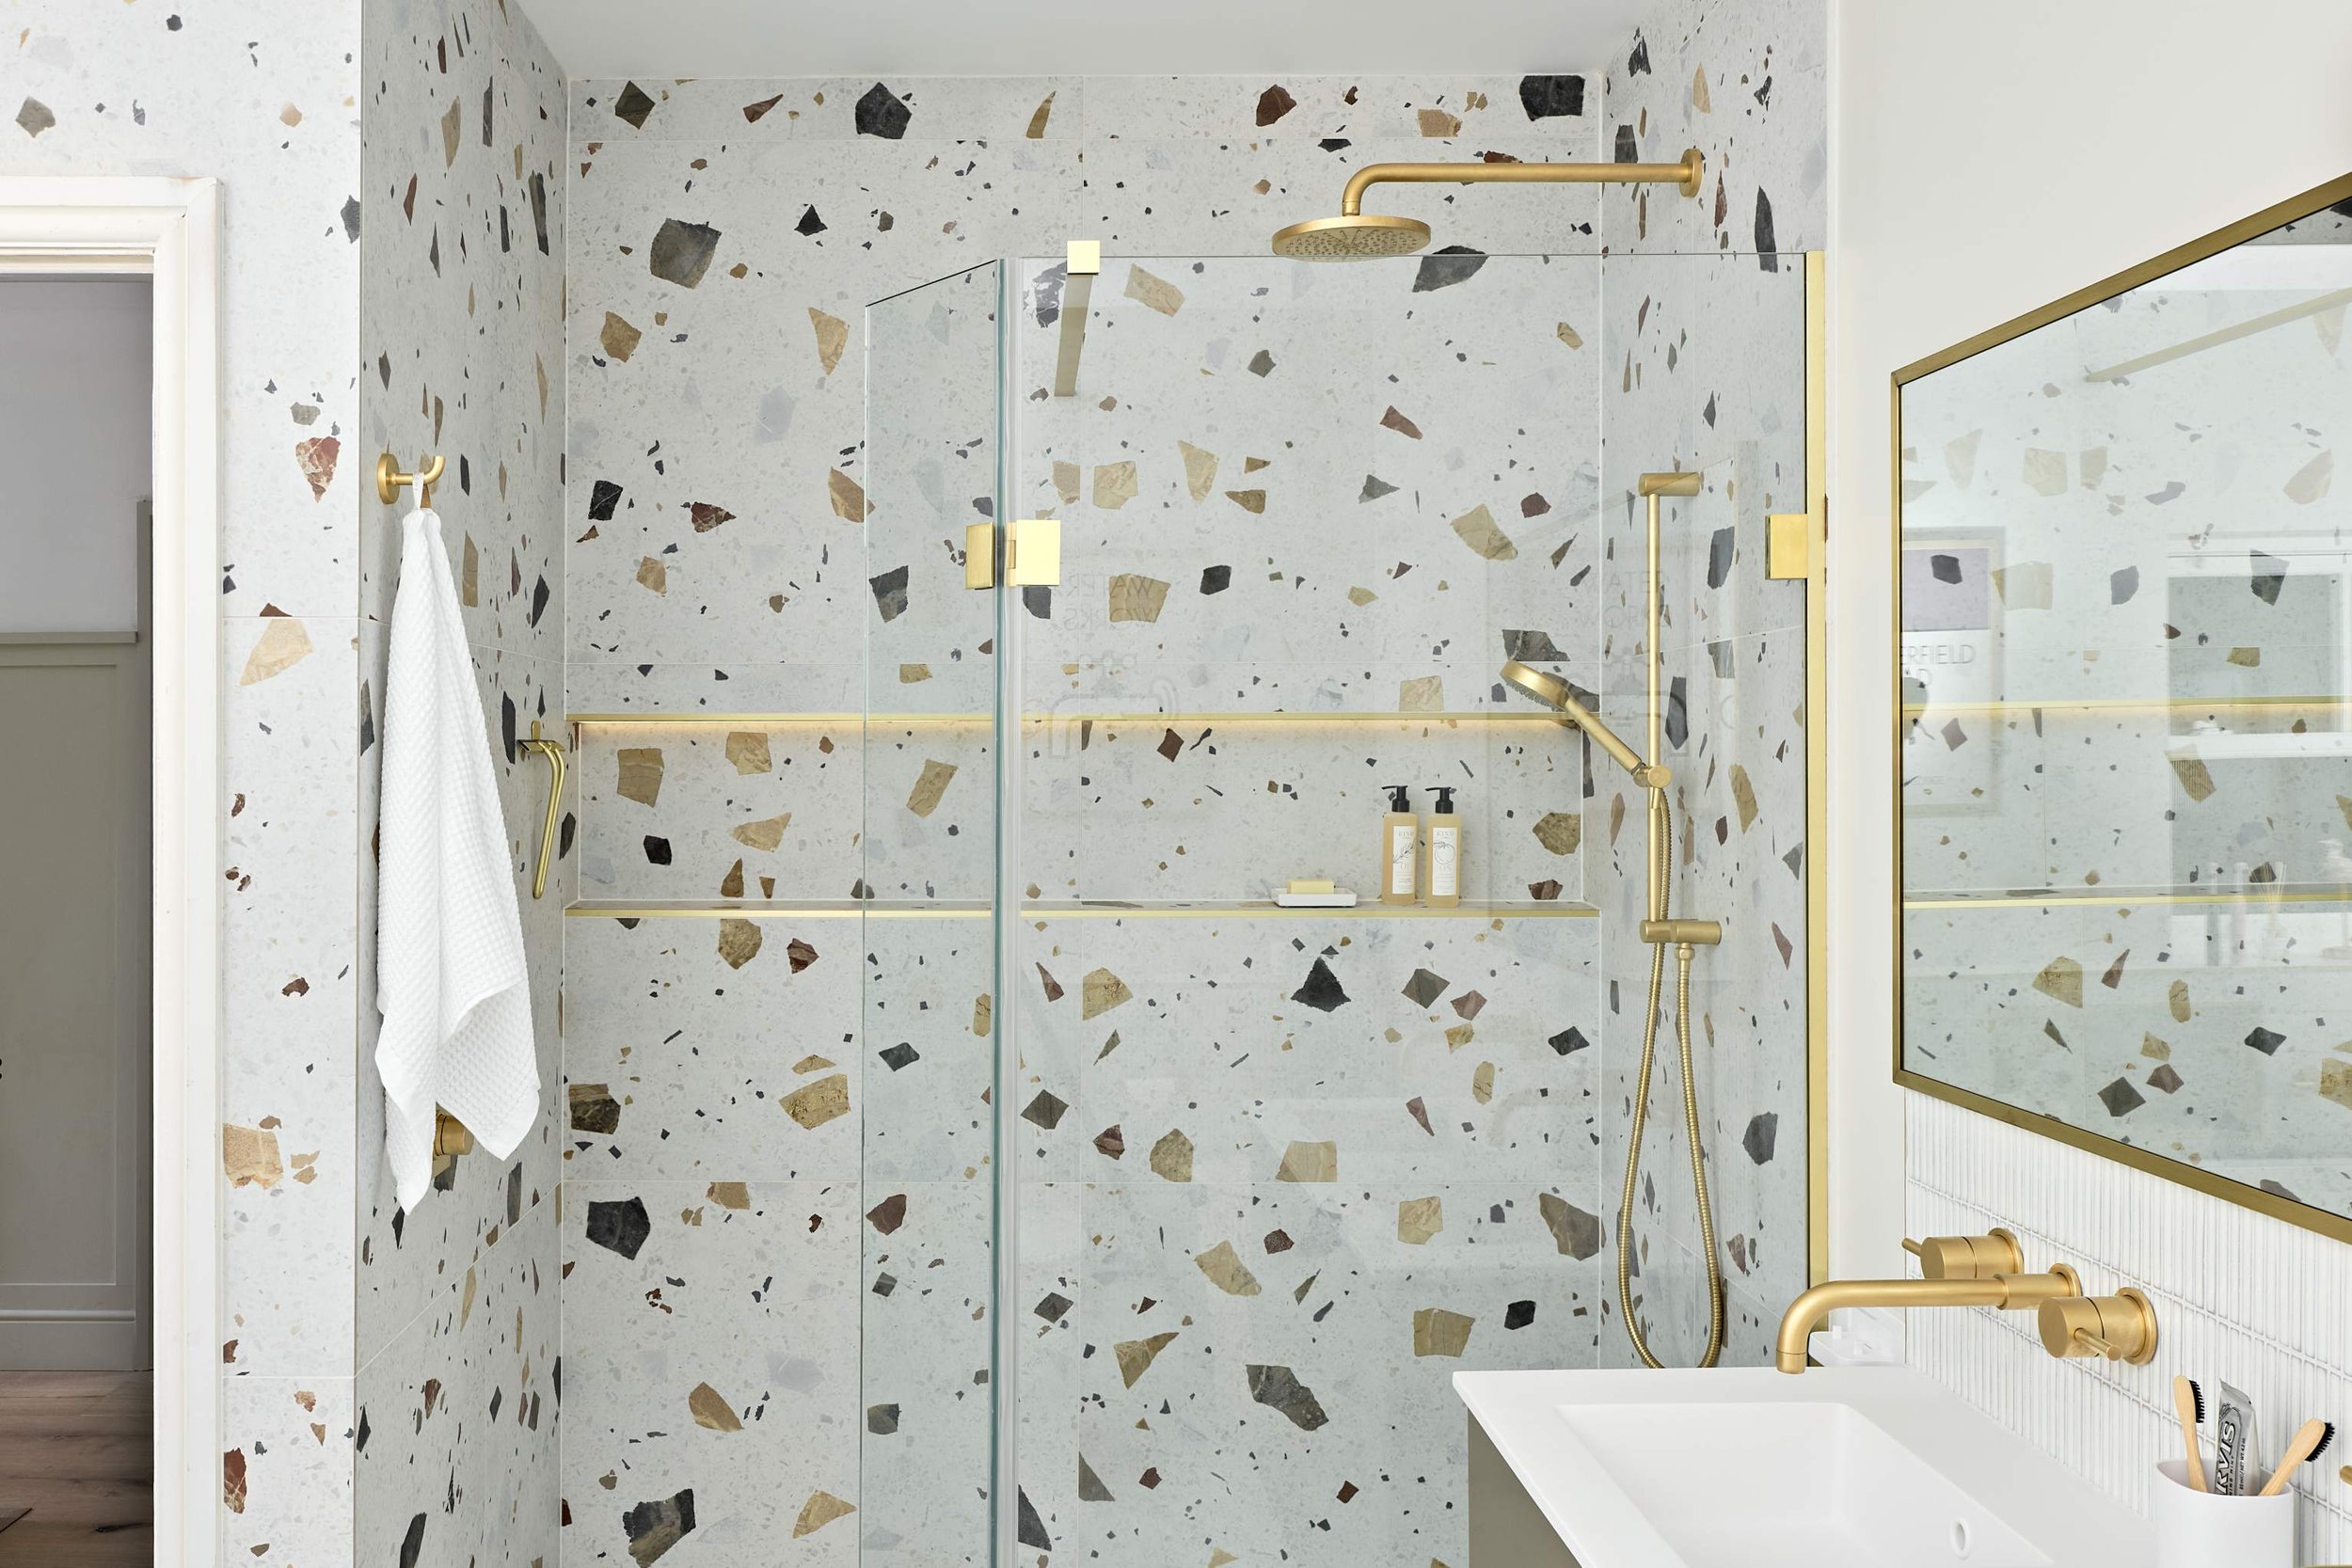 terrazzo-tiles-in-shower-room.jpg